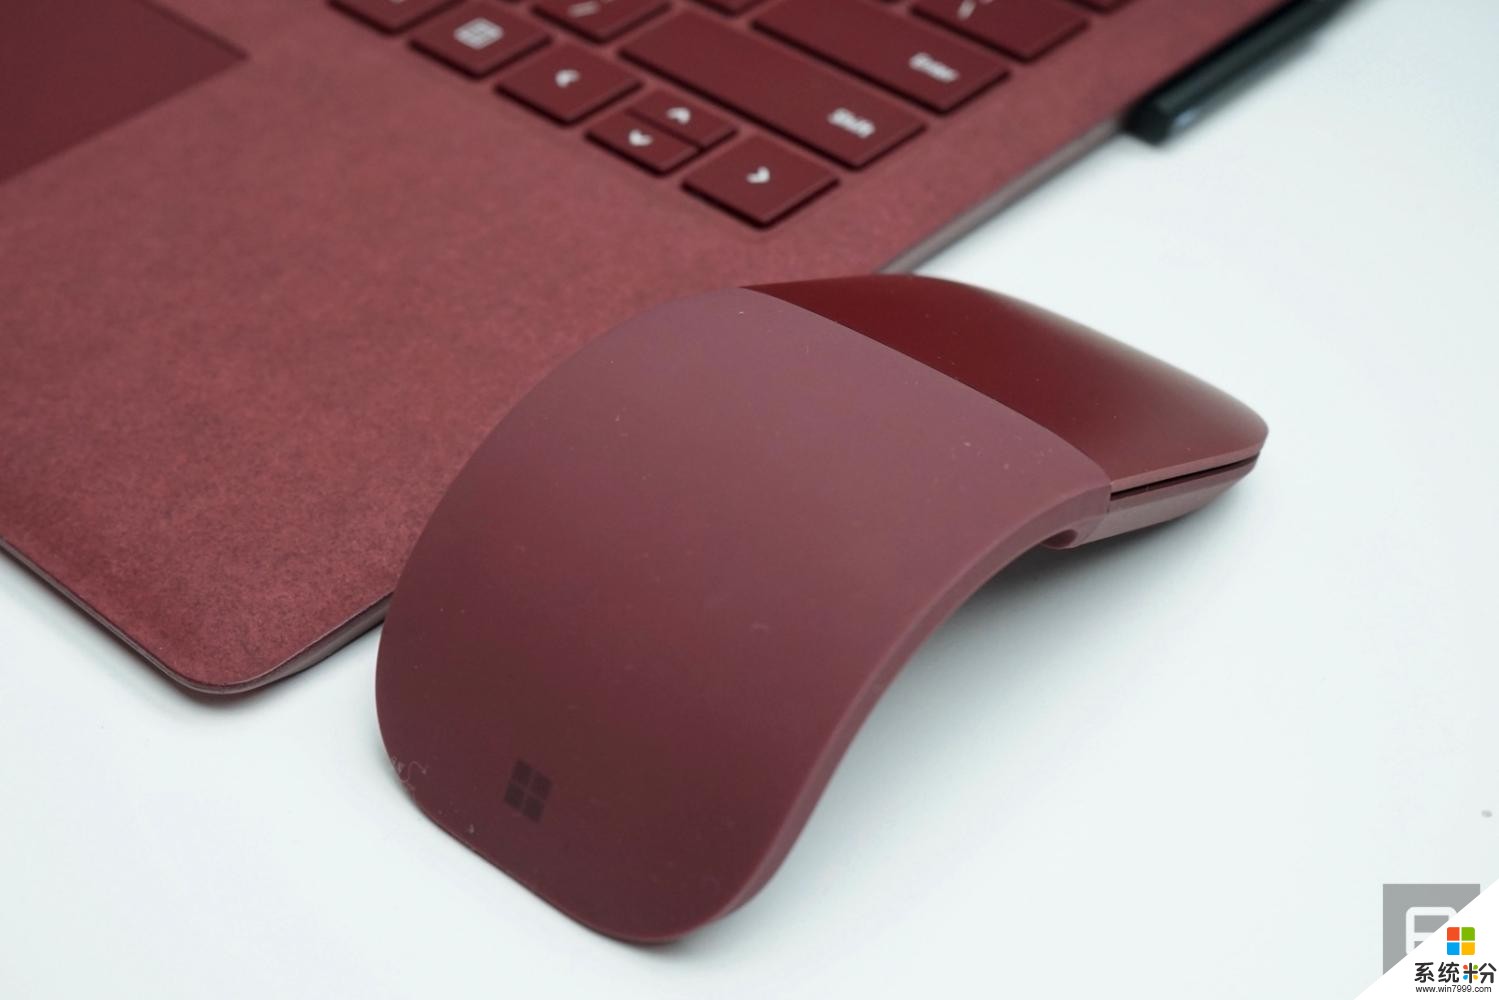 微软又推出新款的可摊平式无线蓝牙鼠标 Surface Arc